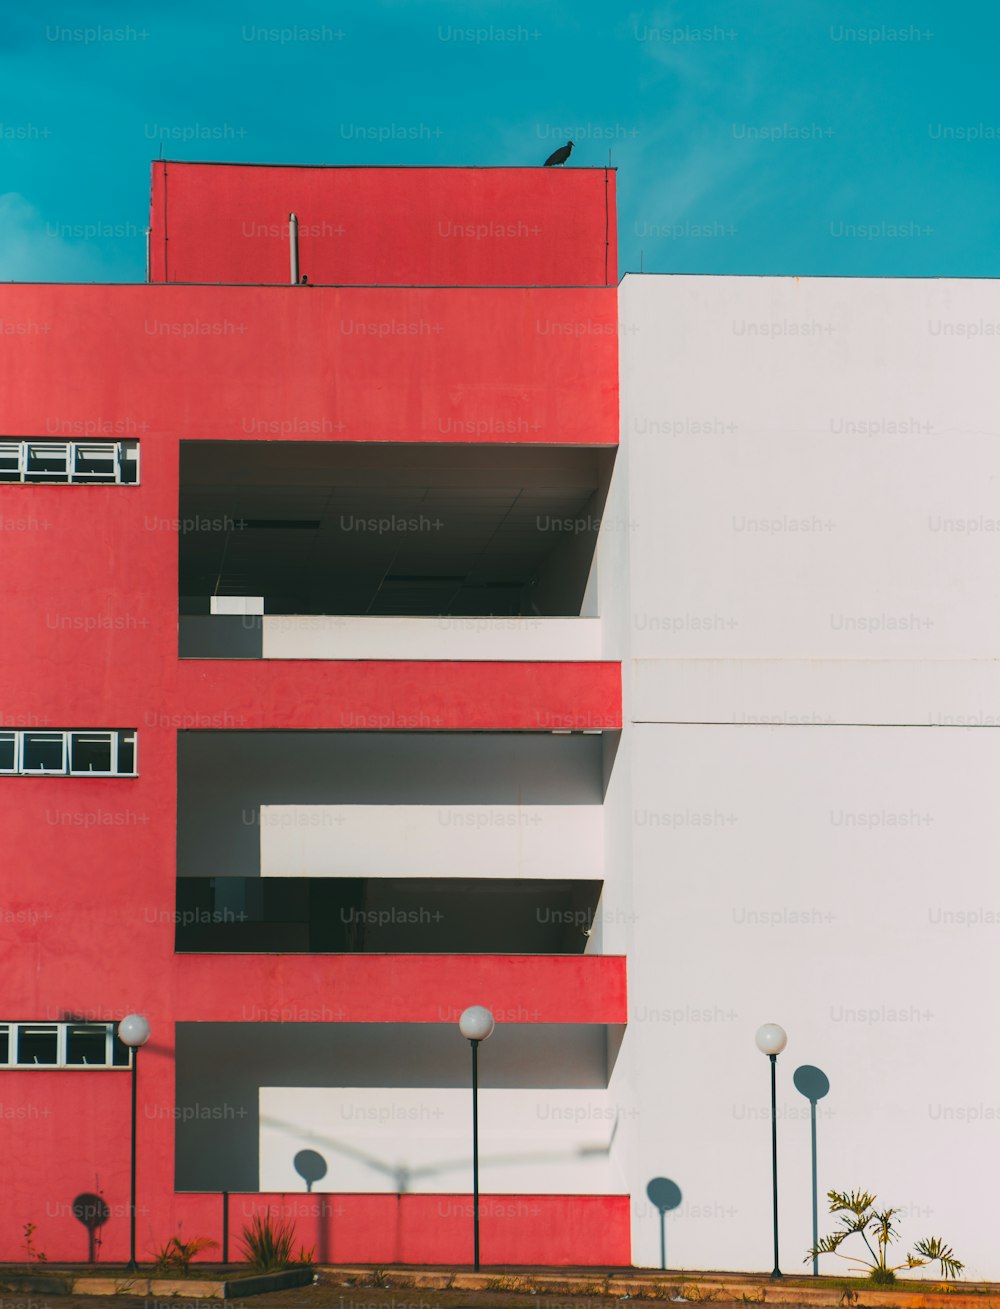 La façade du bâtiment moderne divisée en deux : une partie de la façade est rouge et possède des balcons et des fenêtres, une autre partie est blanche ; lanternes en dessous, un énorme oiseau sur le toit, géométrie minimaliste